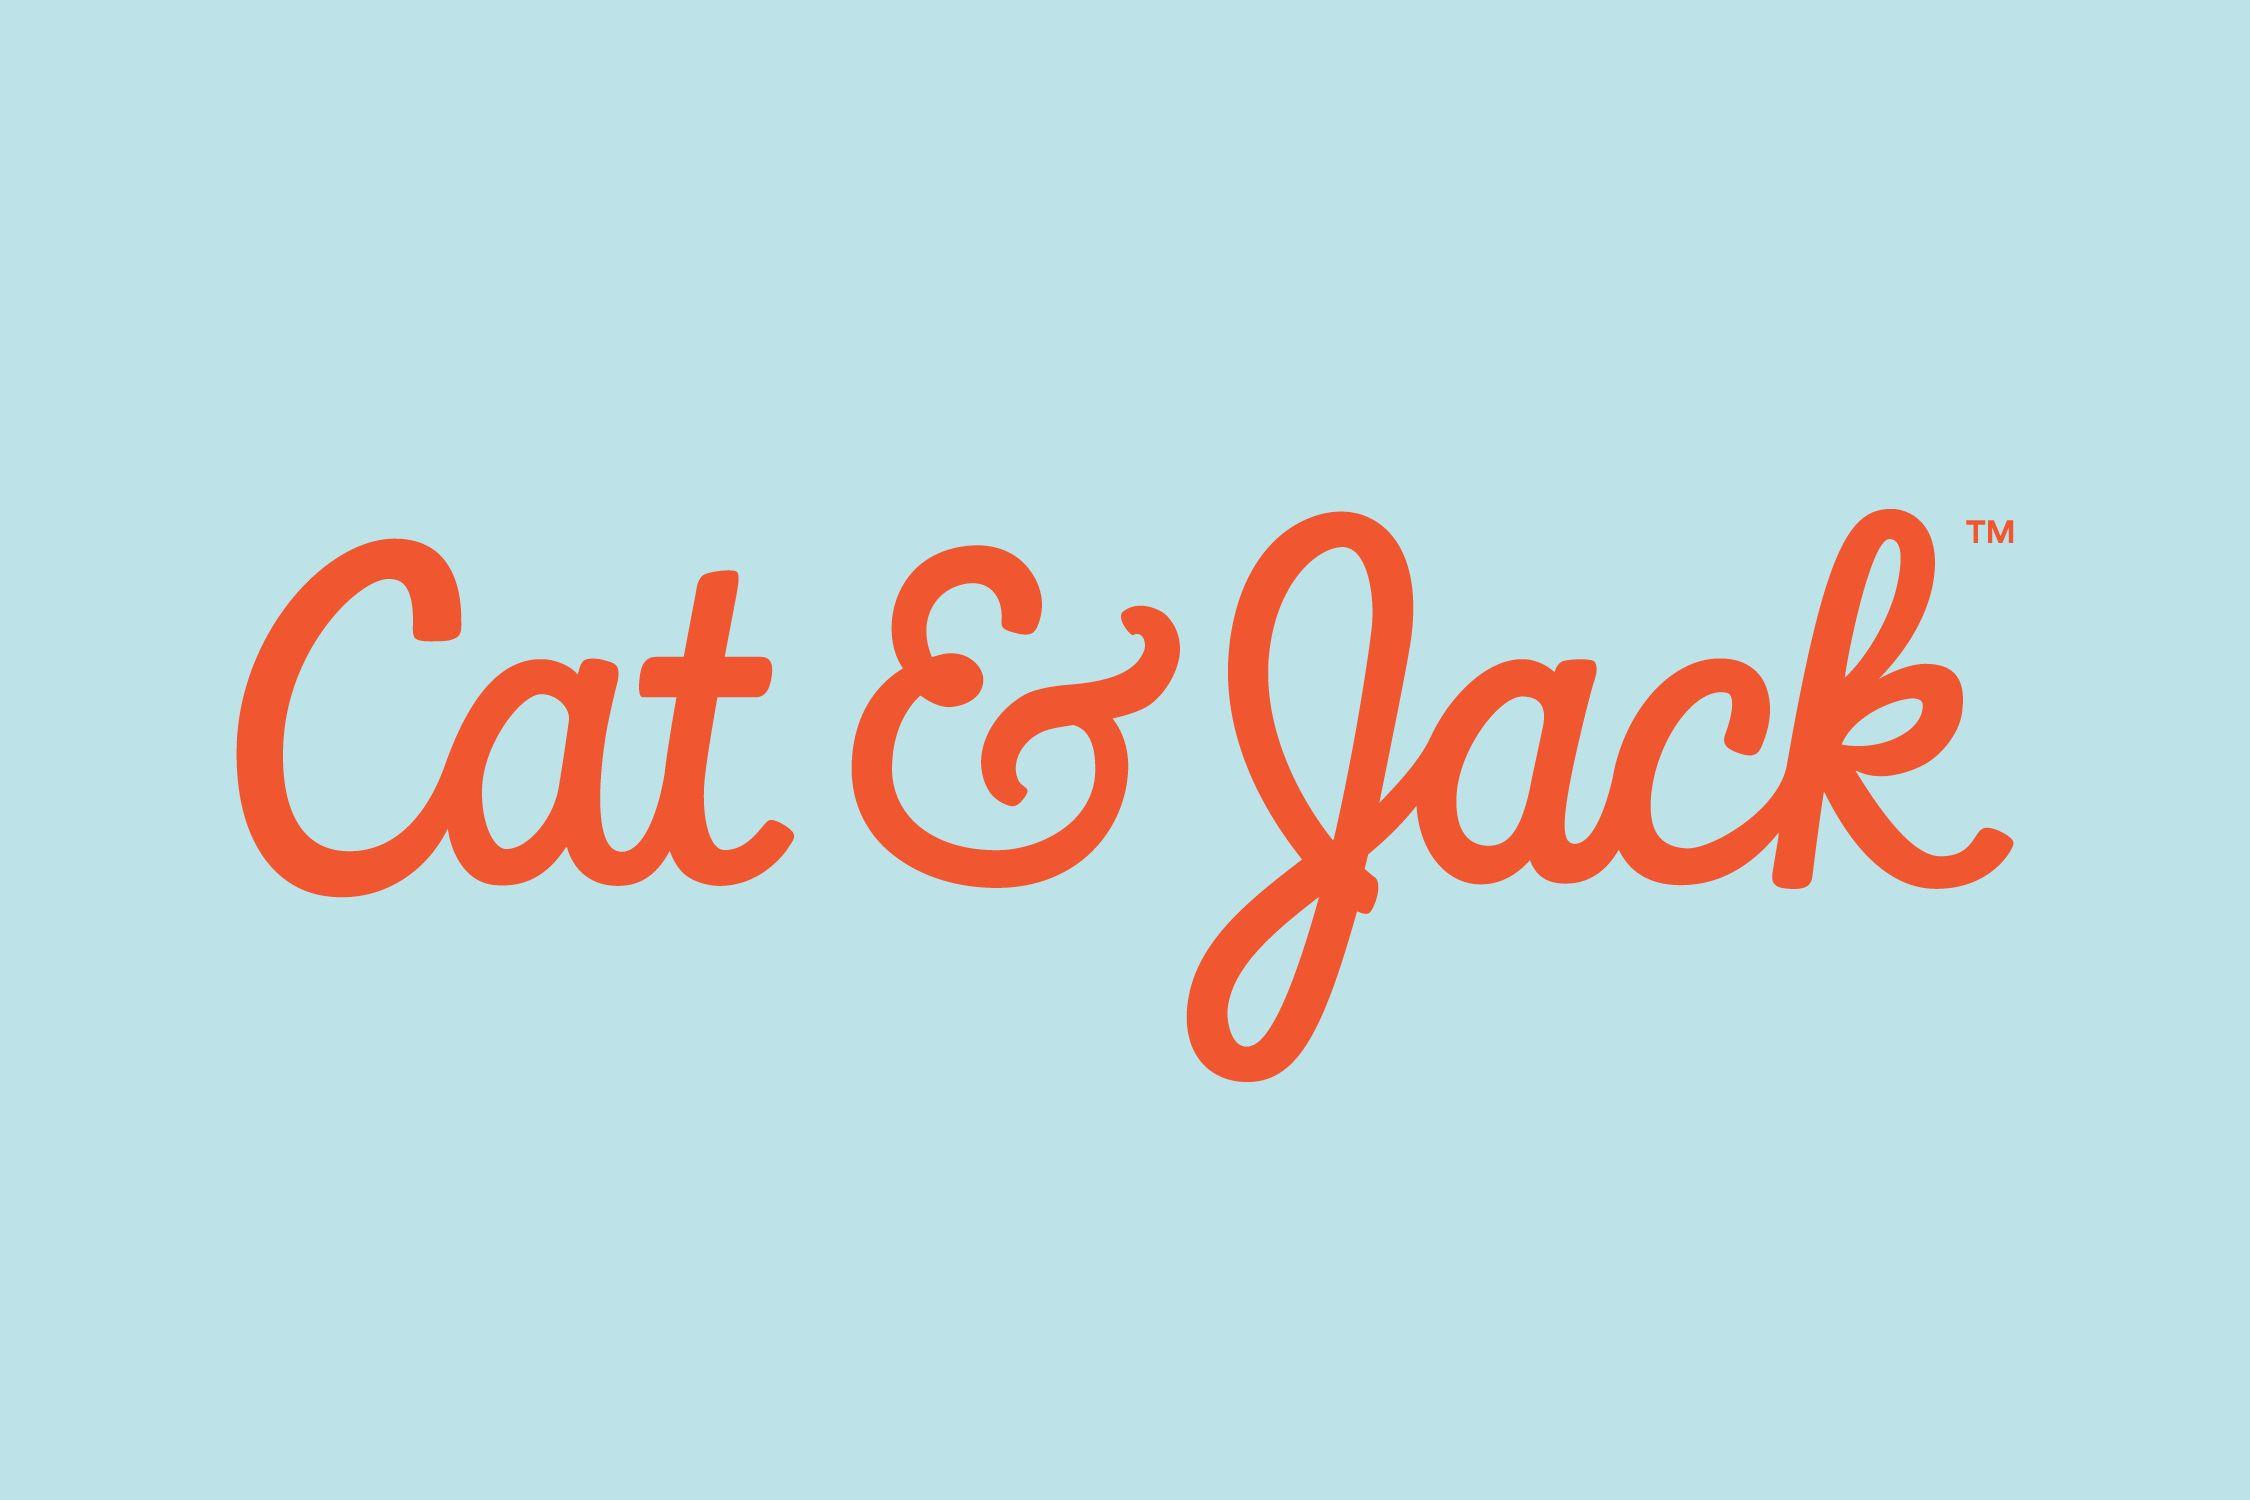 Jacl Logo - Cat & Jack - Tina Smith